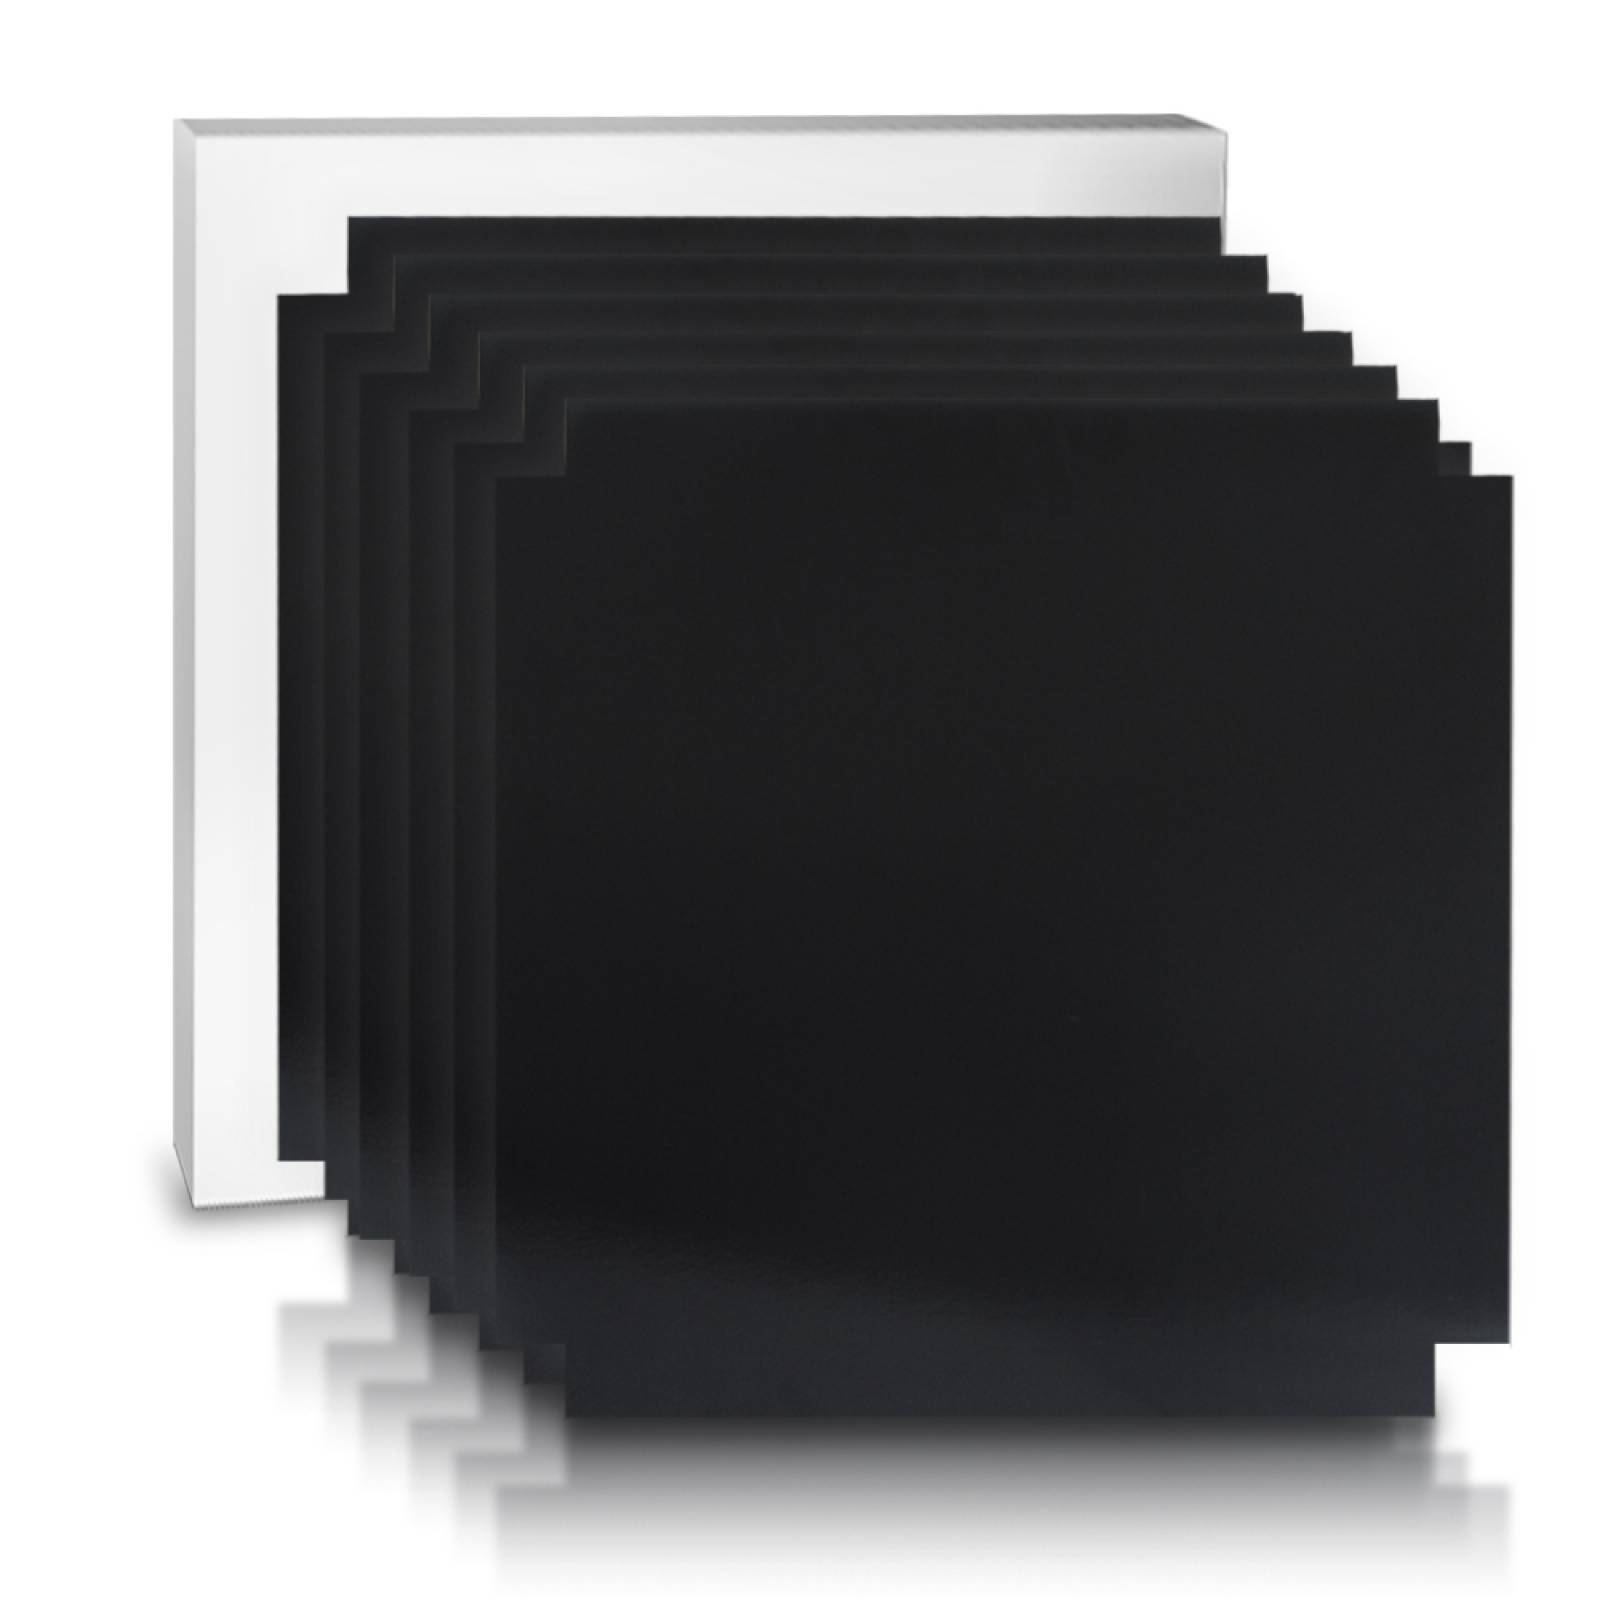 Aislante Cerámico Protector Térmico para Pared de 52 x 45 cm Negro, Paquete 6 Piezas, Mod: 4PTPP6Ne